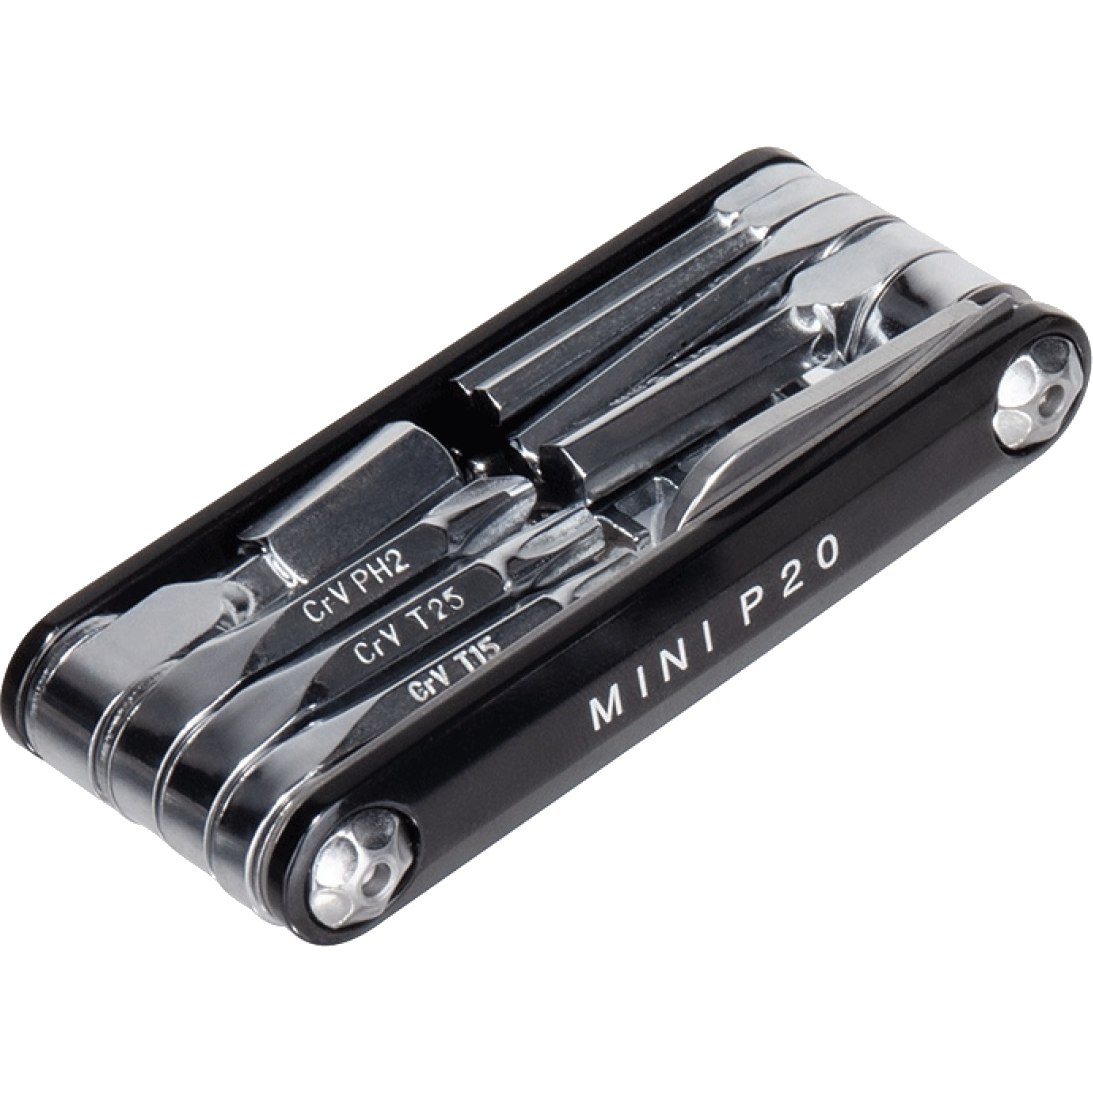 Produktbild von Topeak Mini P20 Miniwerkzeug - black